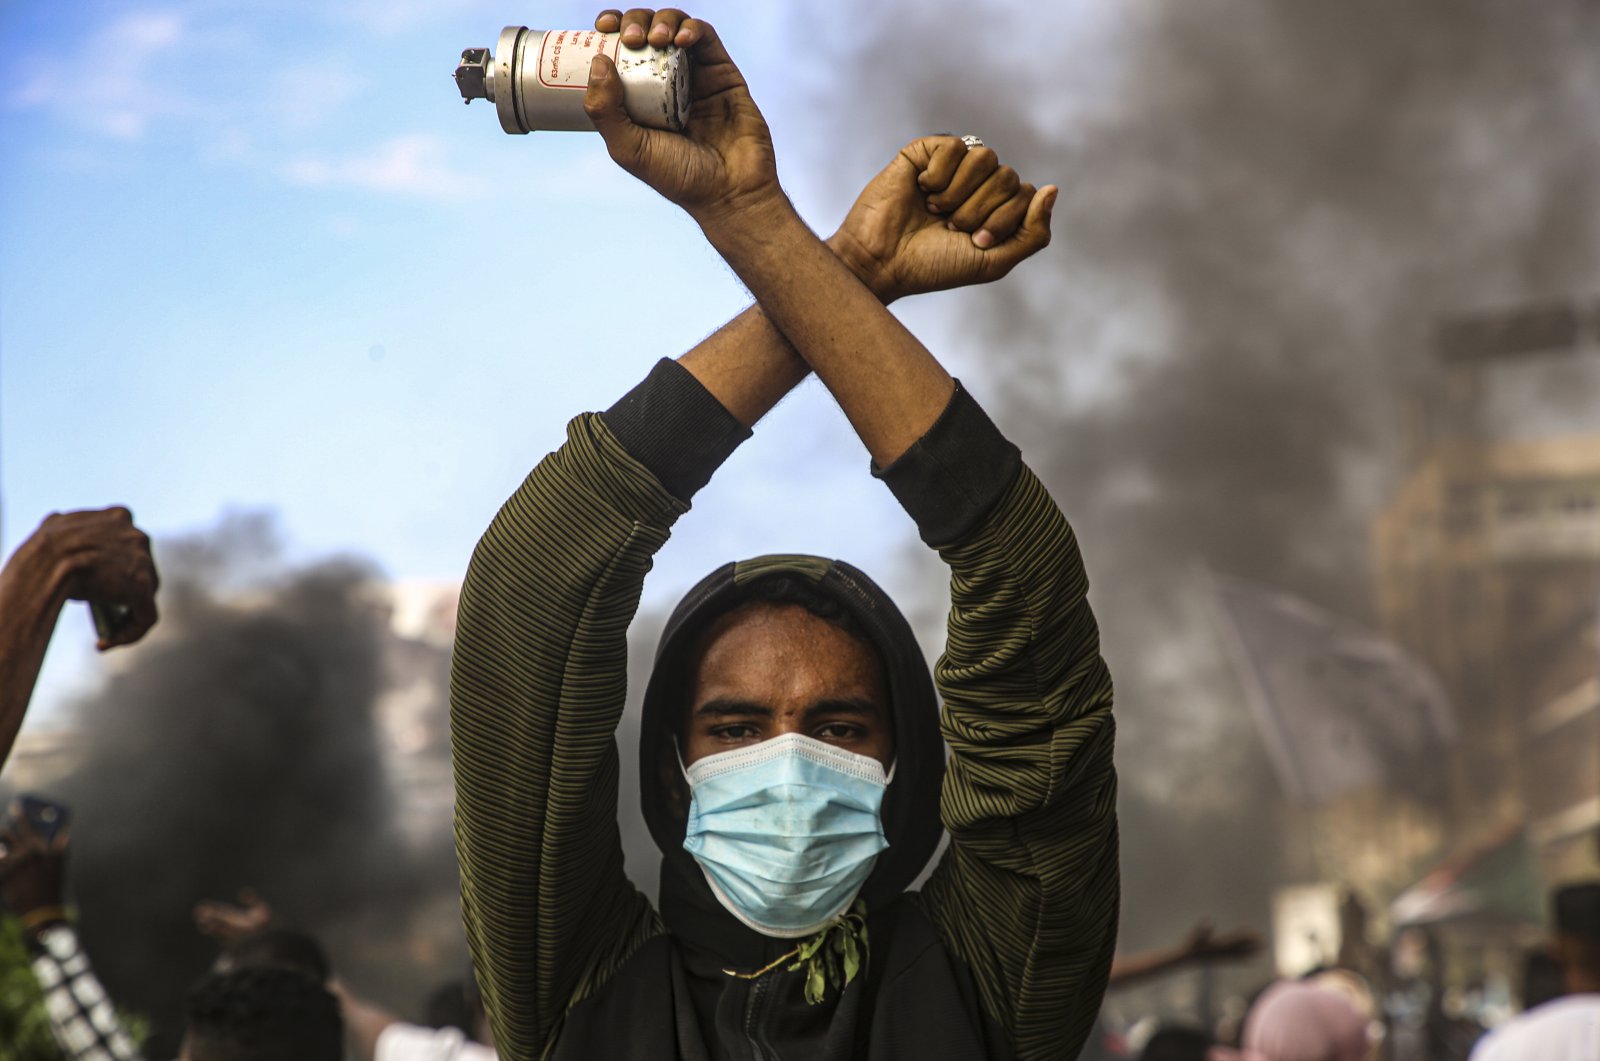 Puluhan ribu berkumpul di Sudan untuk memprotes, 58 petugas terluka